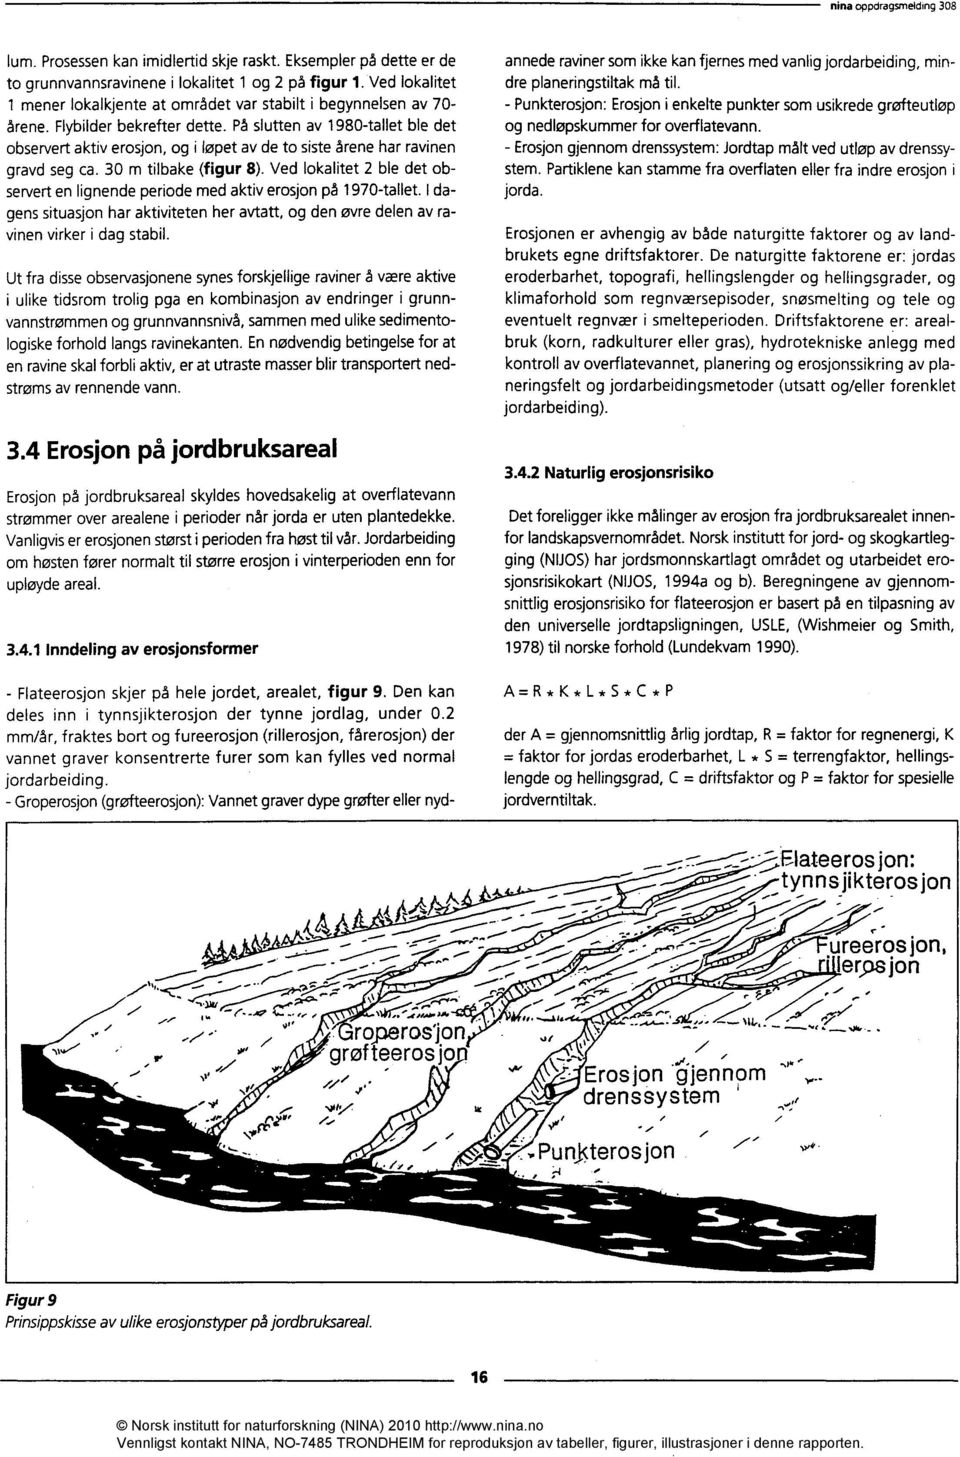 På slutten av 1980-tallet ble det observert aktiv erosjon, og i løpet av de to siste årene har ravinen gravd seg ca. 30 m tilbake (figur 8).